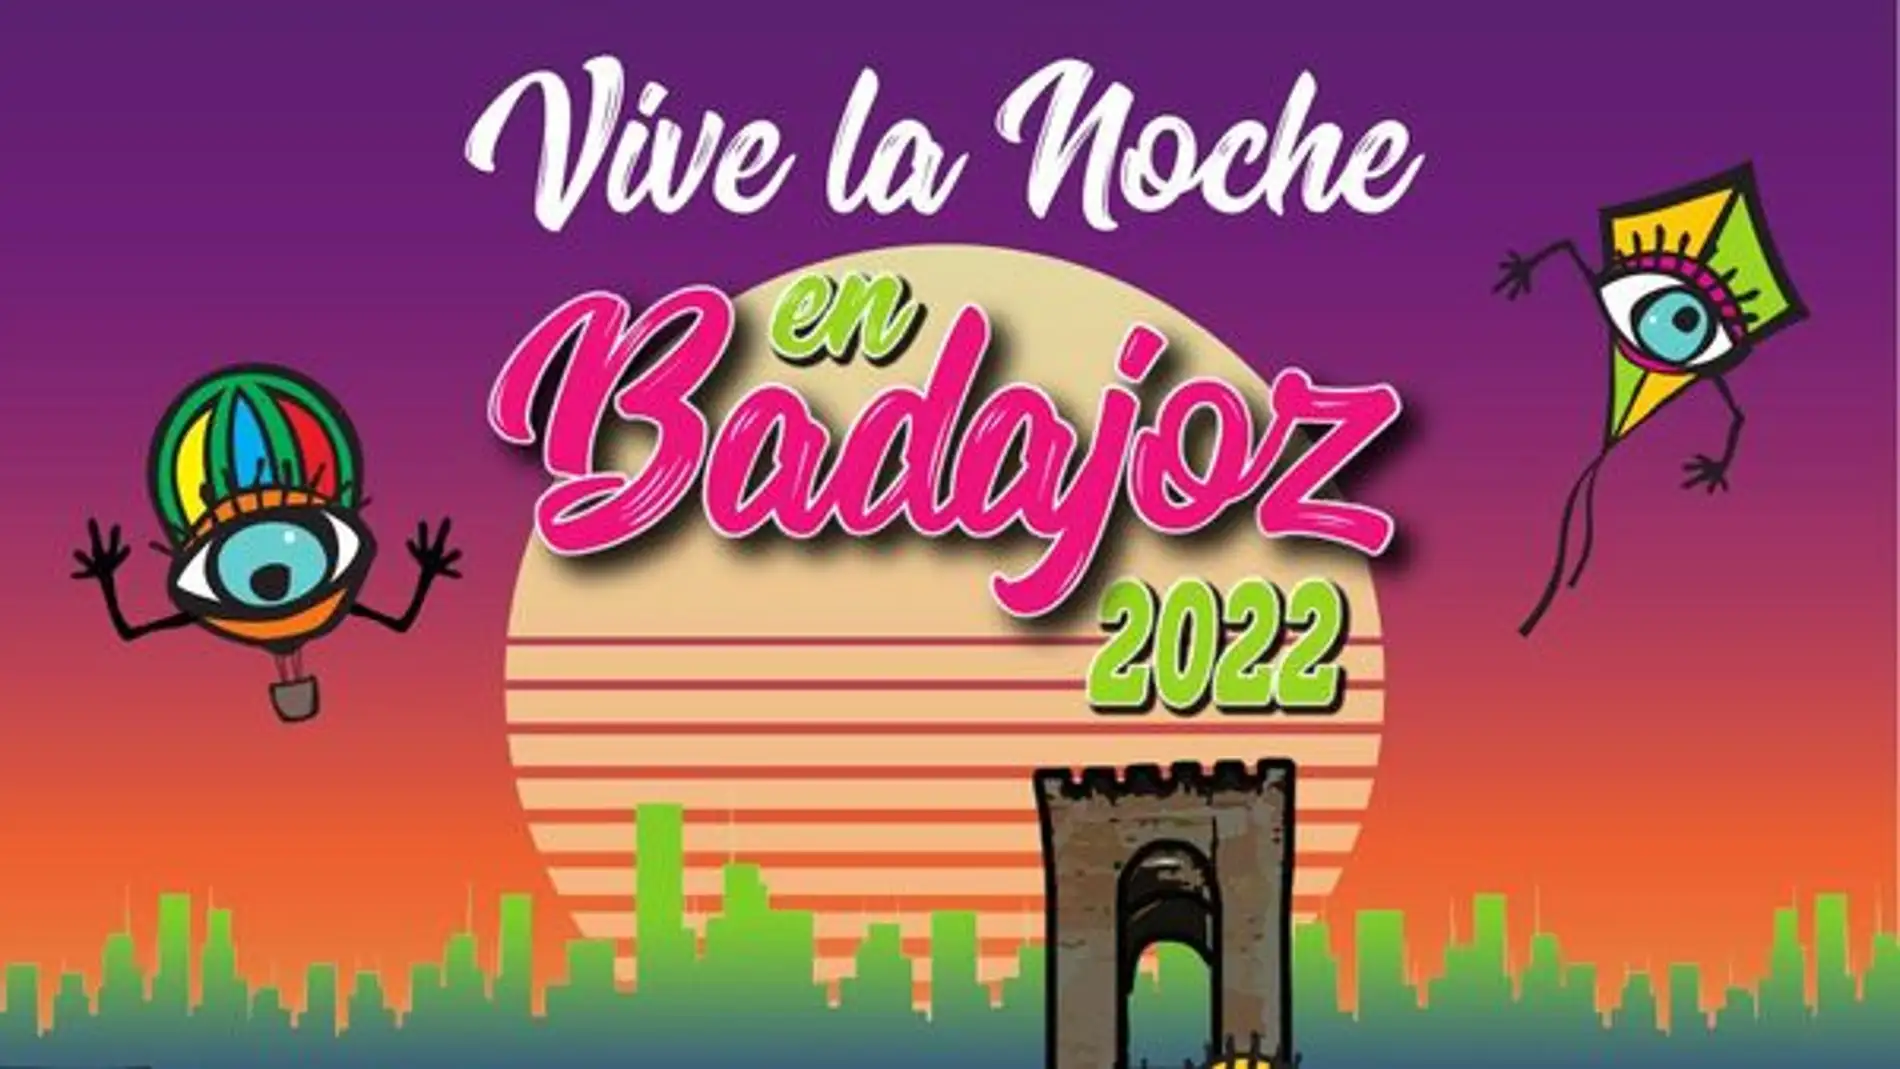 'Vive la noche en Badajoz 2022' se presenta este lunes con una actividad de difusión en zonas frecuentadas por jóvenes